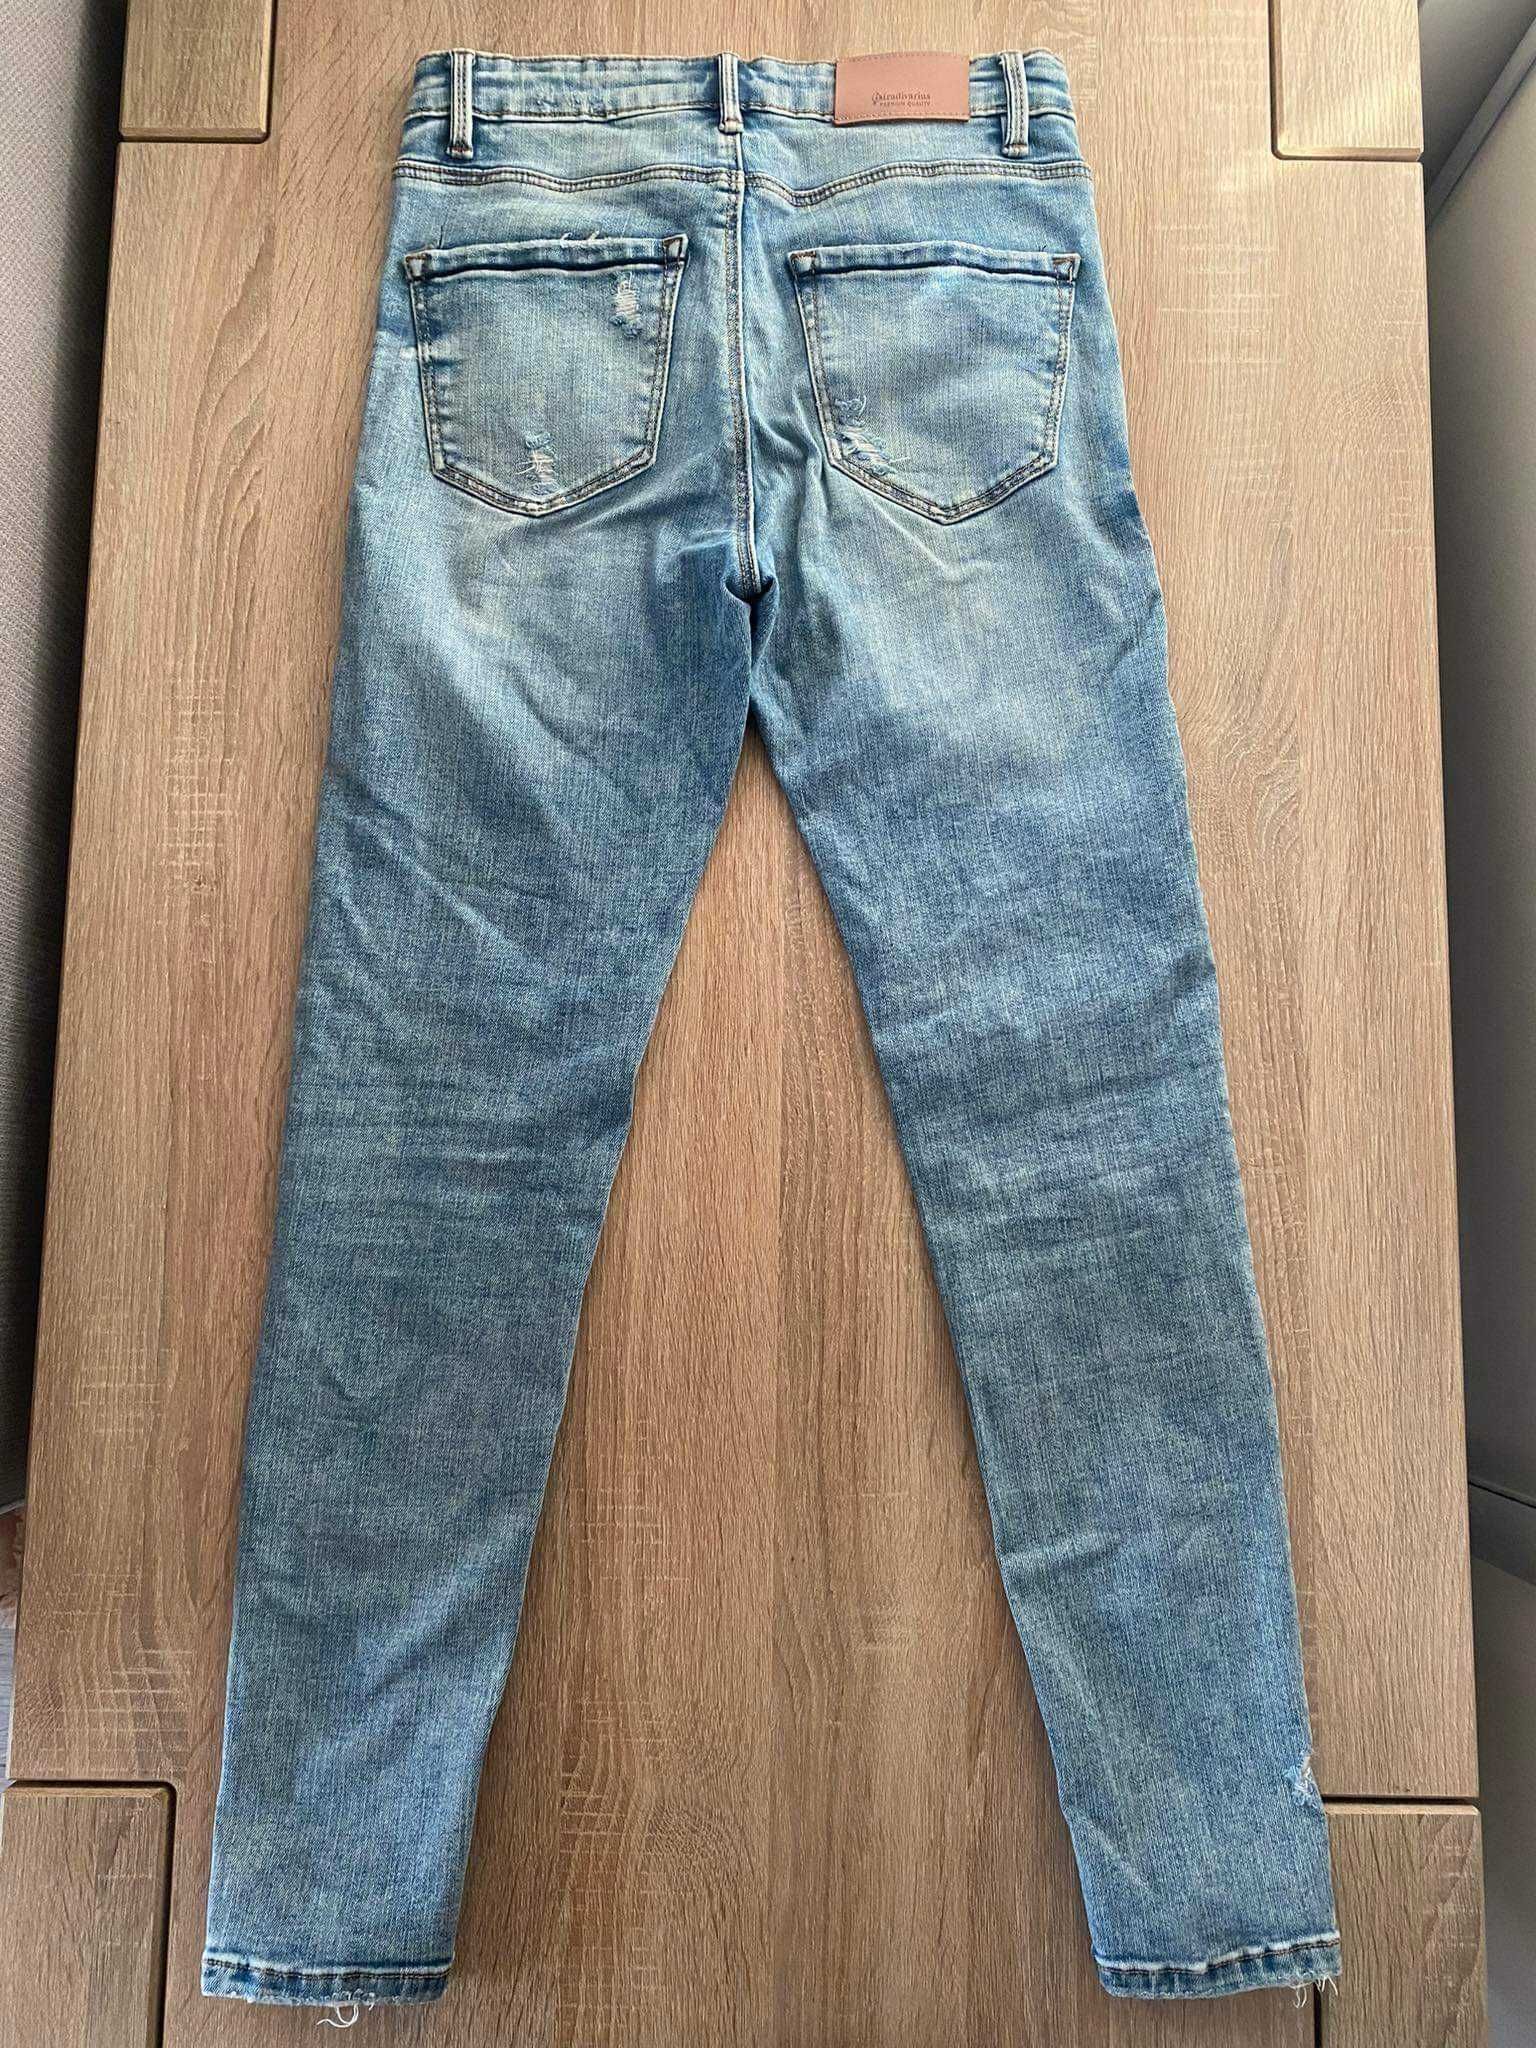 Spodnie dżinsowe niebieskie stradivarius 36